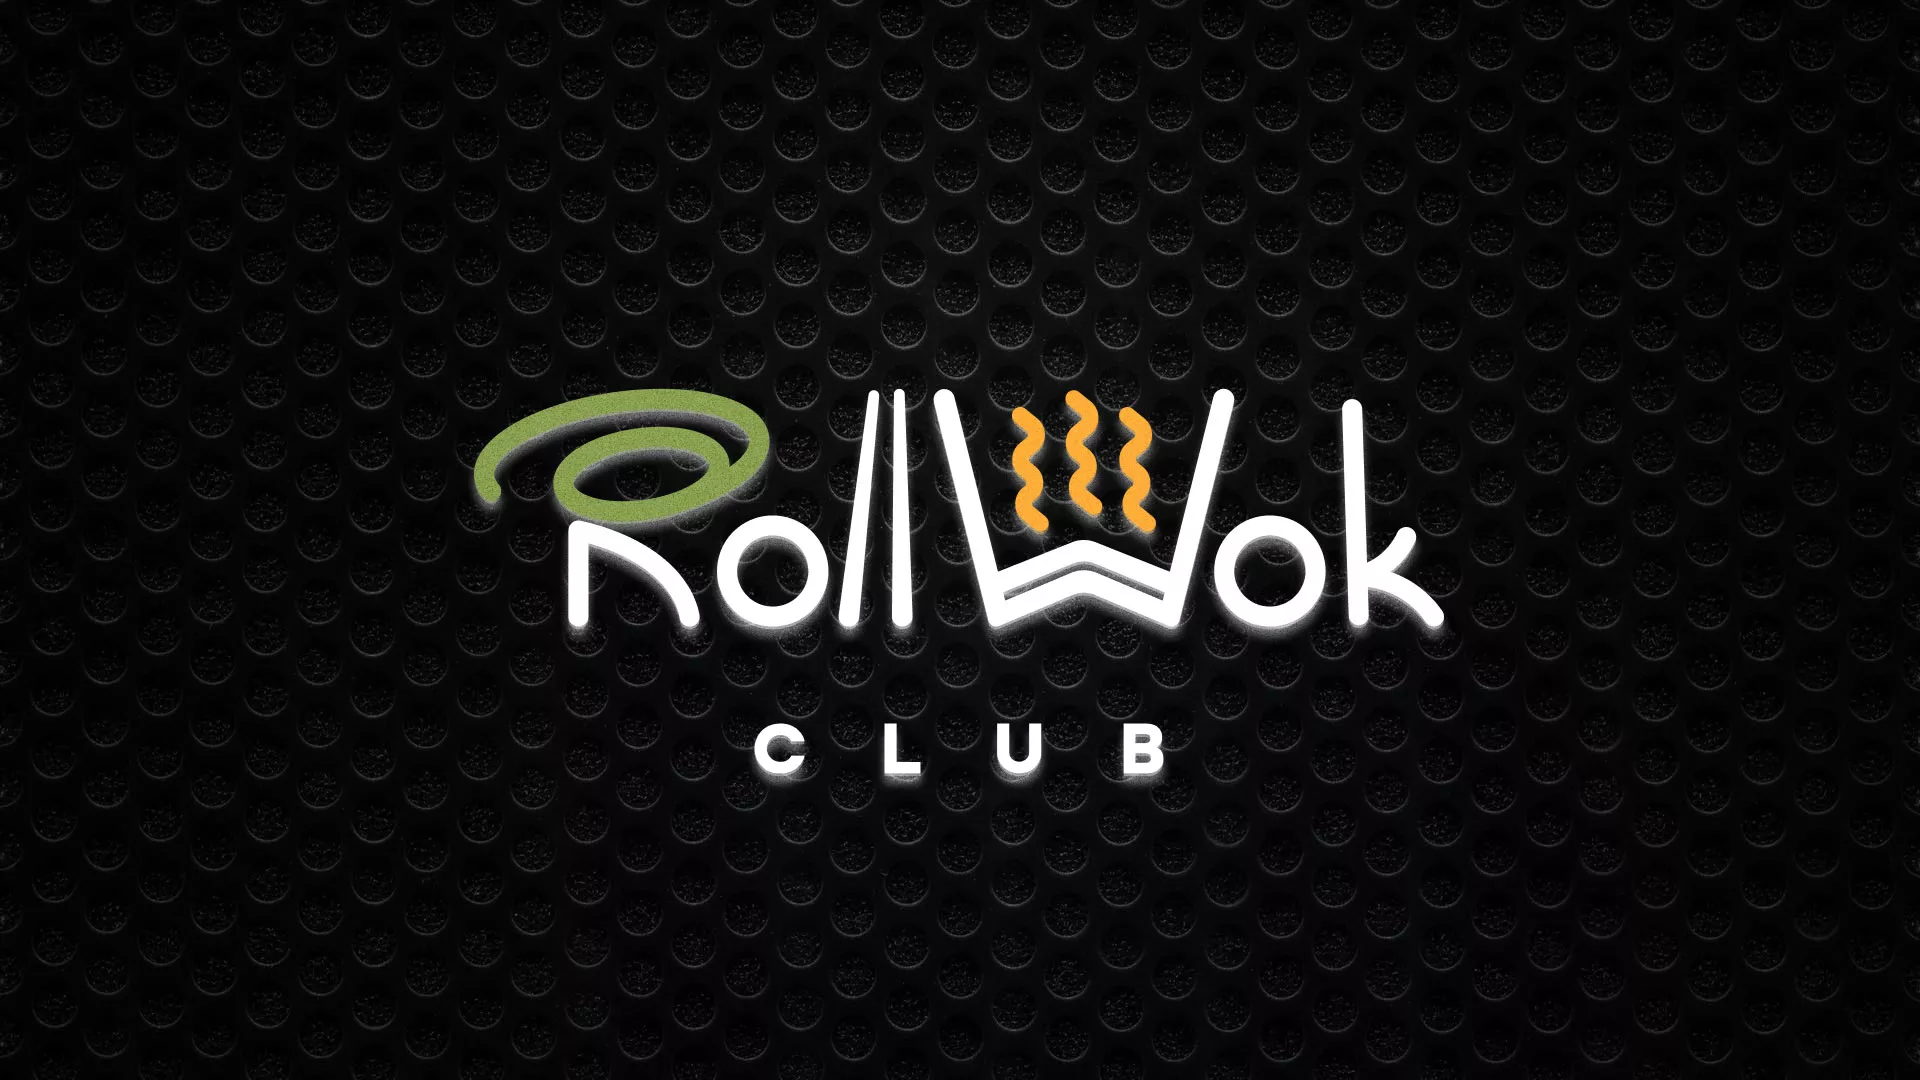 Брендирование торговых точек суши-бара «Roll Wok Club» в Суворове